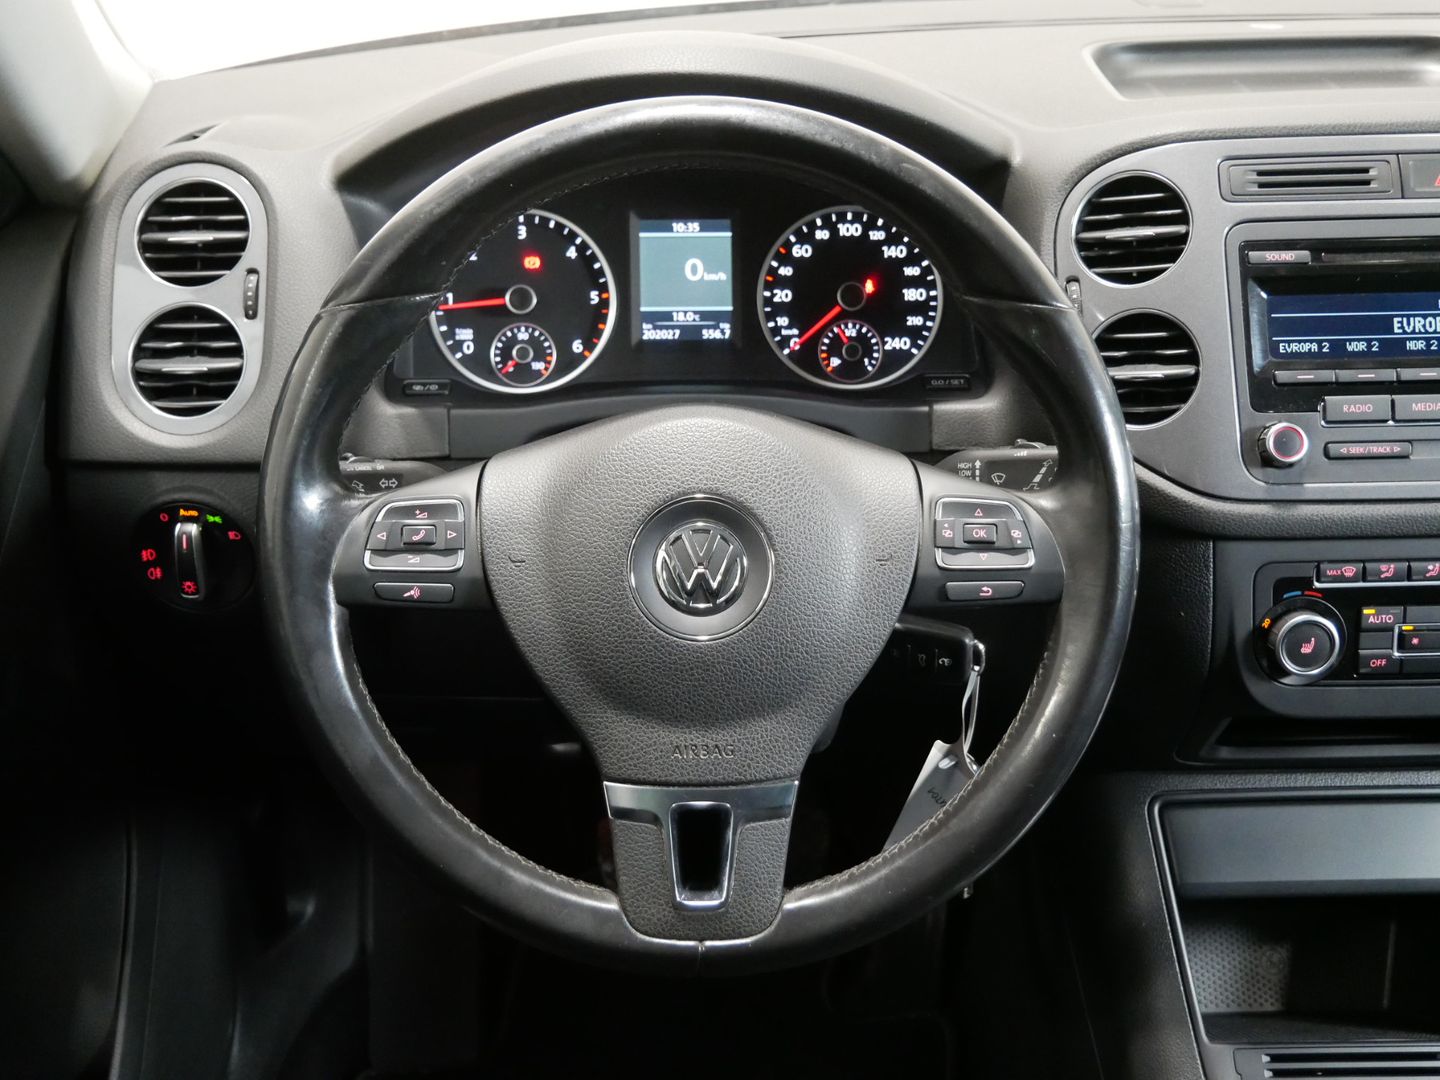 Volkswagen Tiguan 2.0 TDI 103 kW Sport